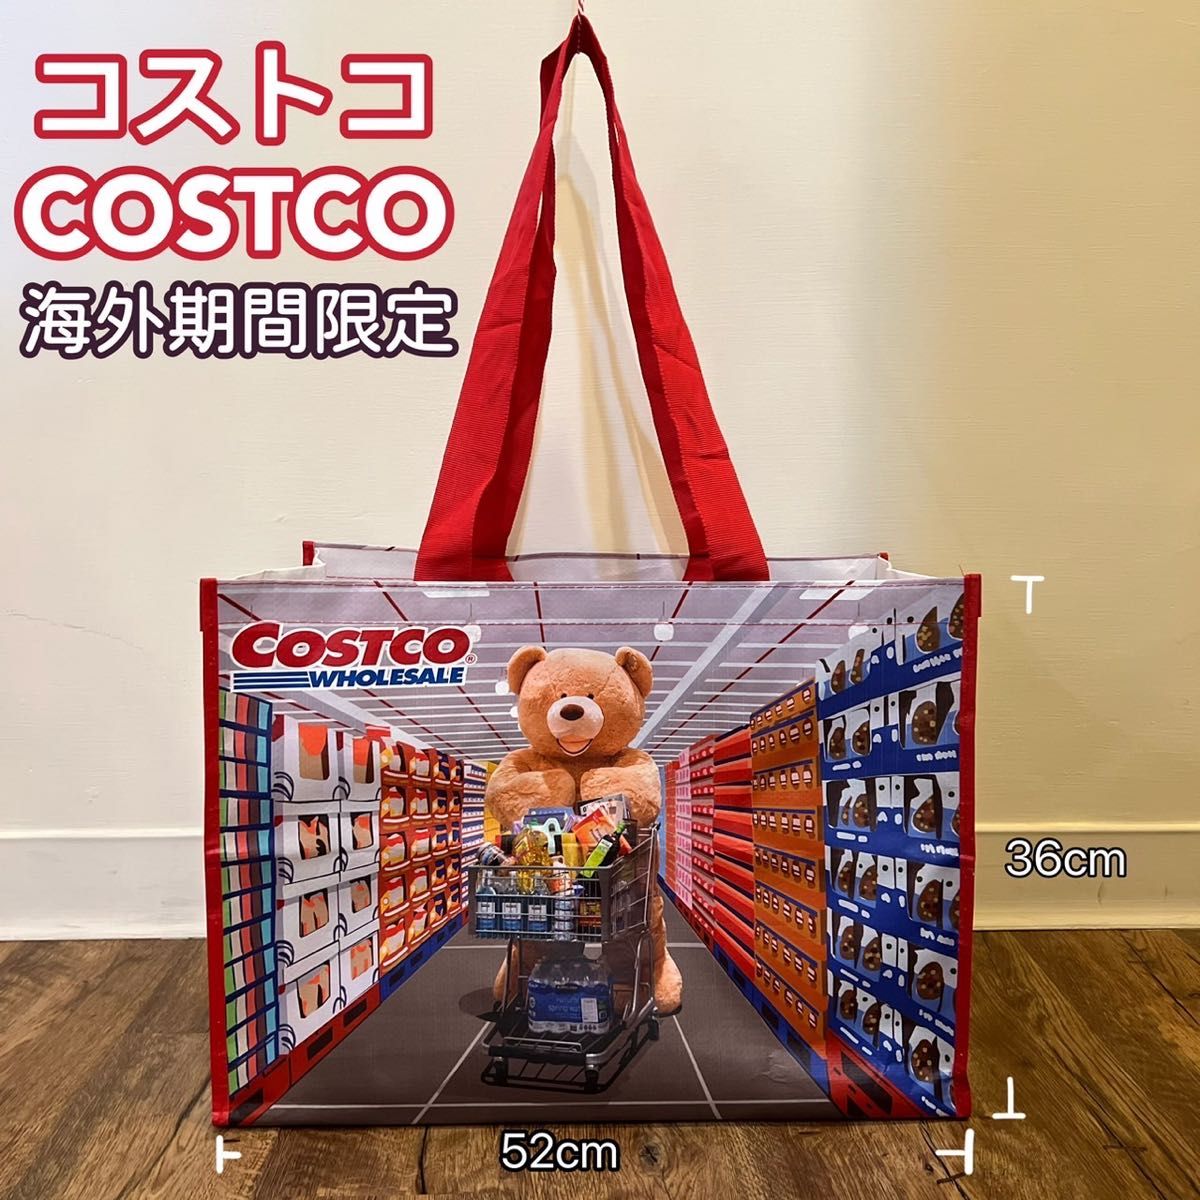 コストコ costco ショッピングバック エコバック クマ 熊 海外限定